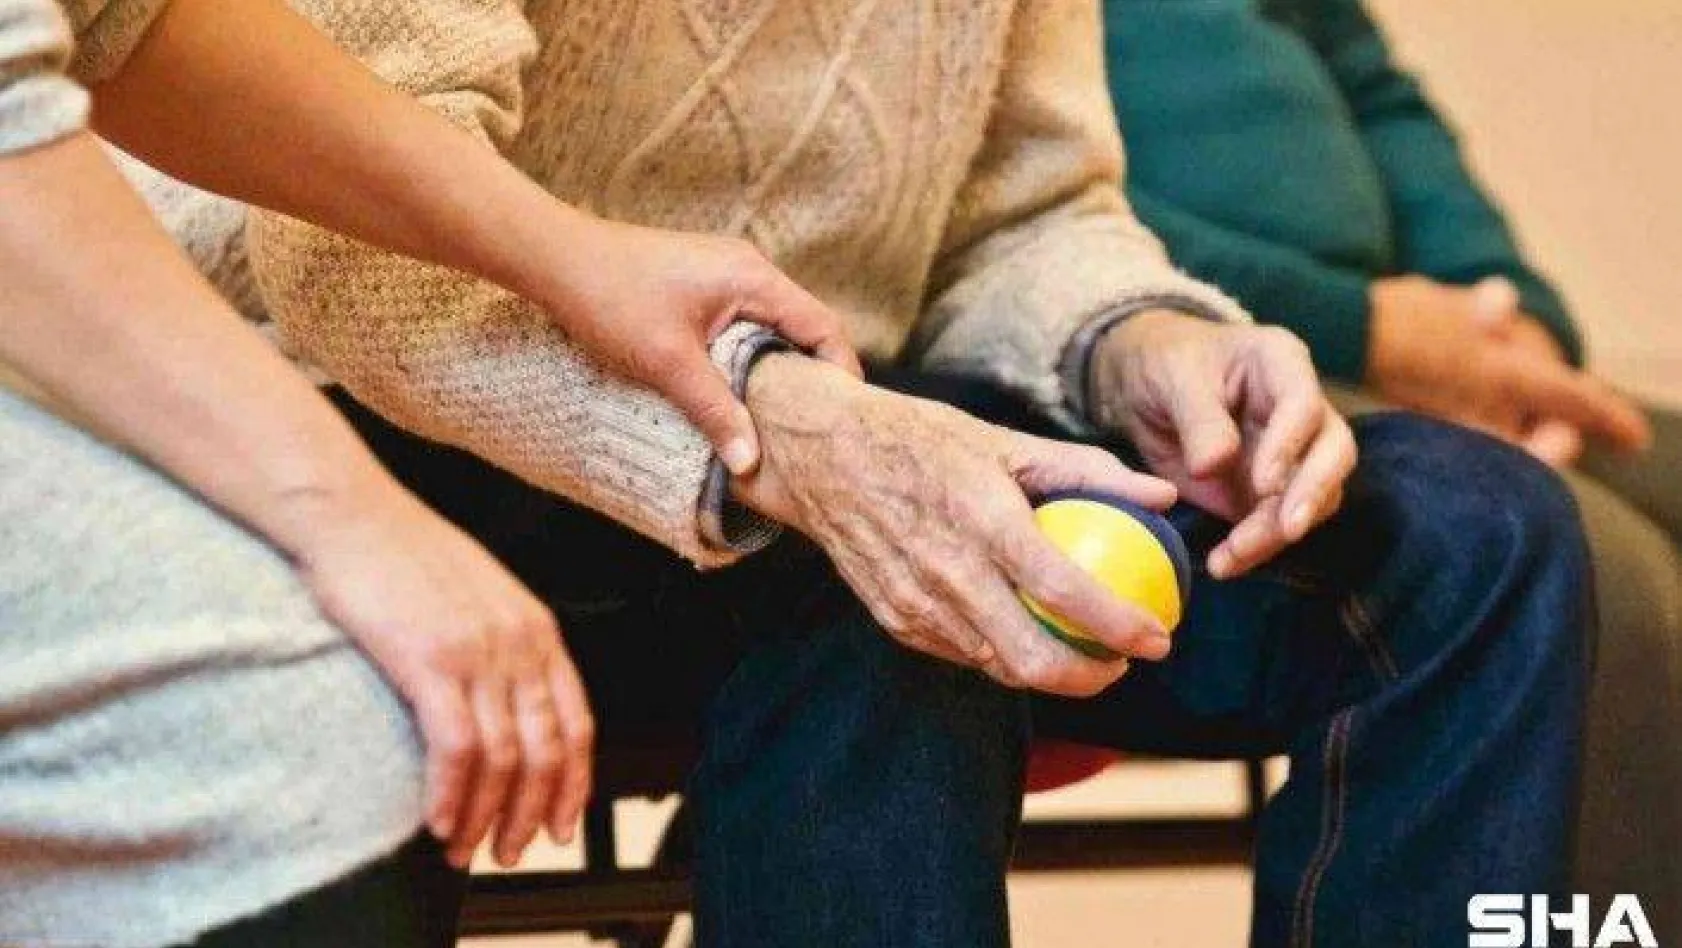 'Covid-19 yalnızlığı Alzheimer riskini artırıyor'